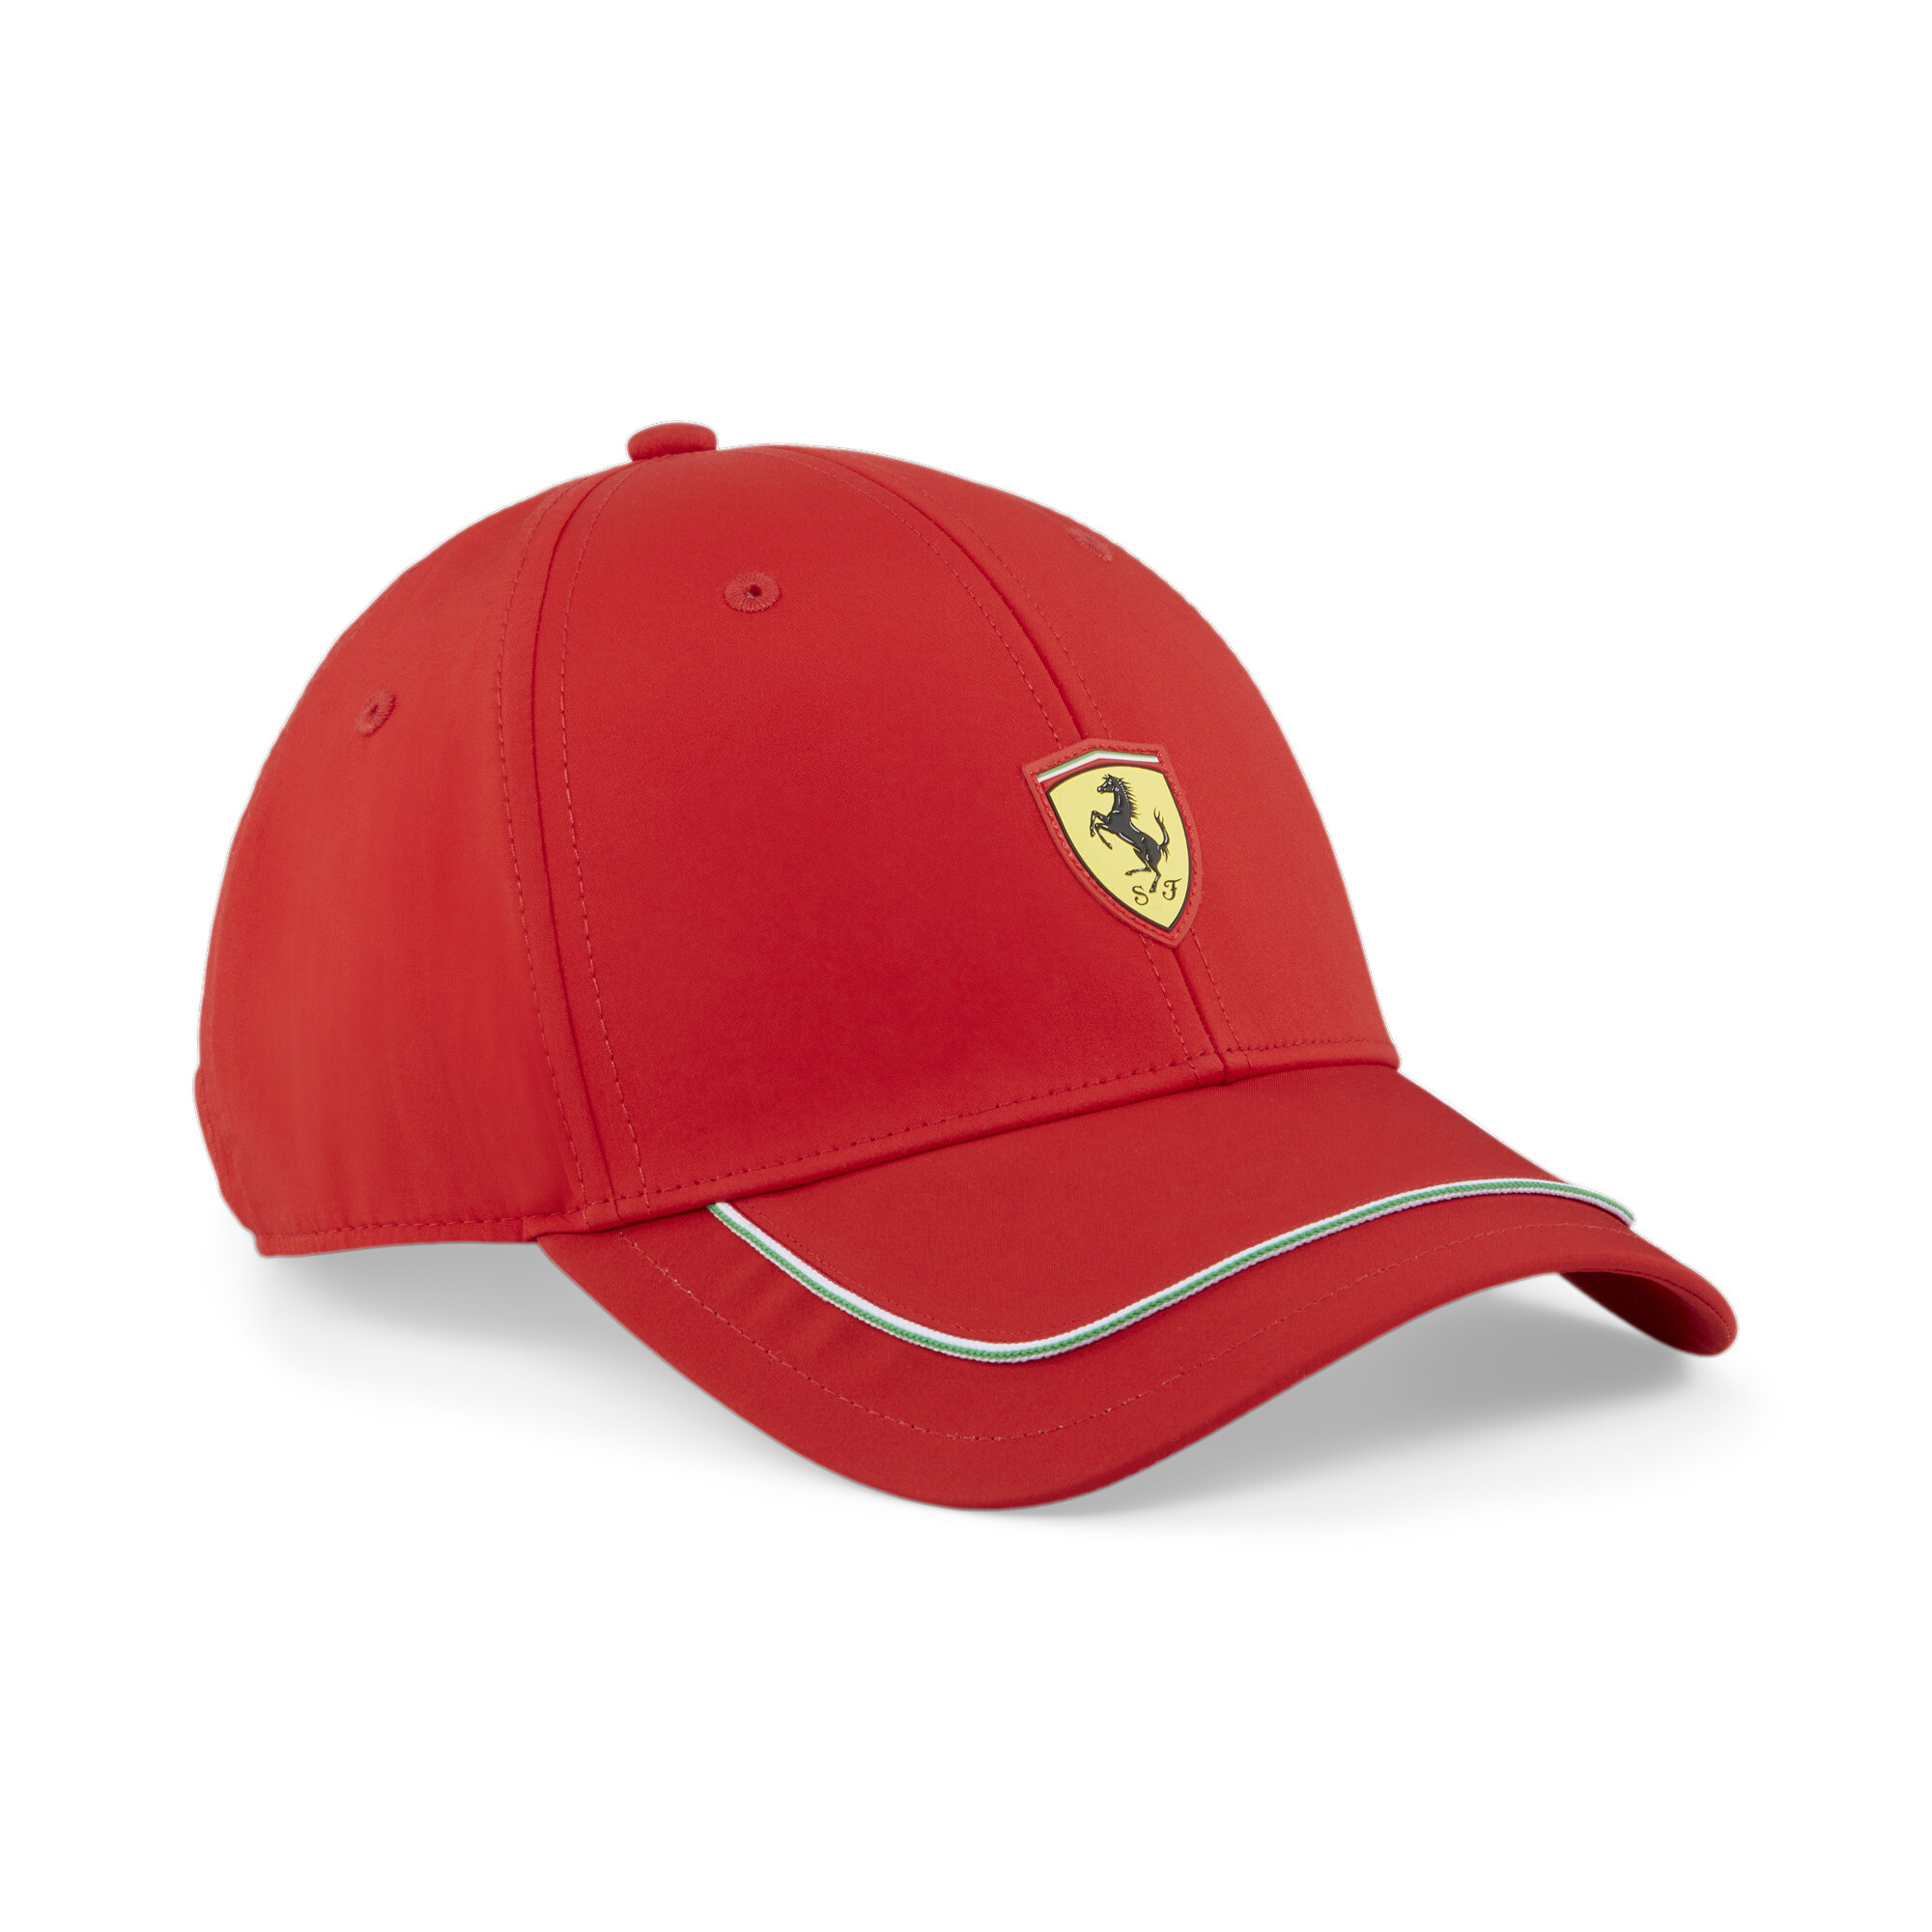 Men's PUMA Scuderia Ferrari Race Cap In Red, Size Adult